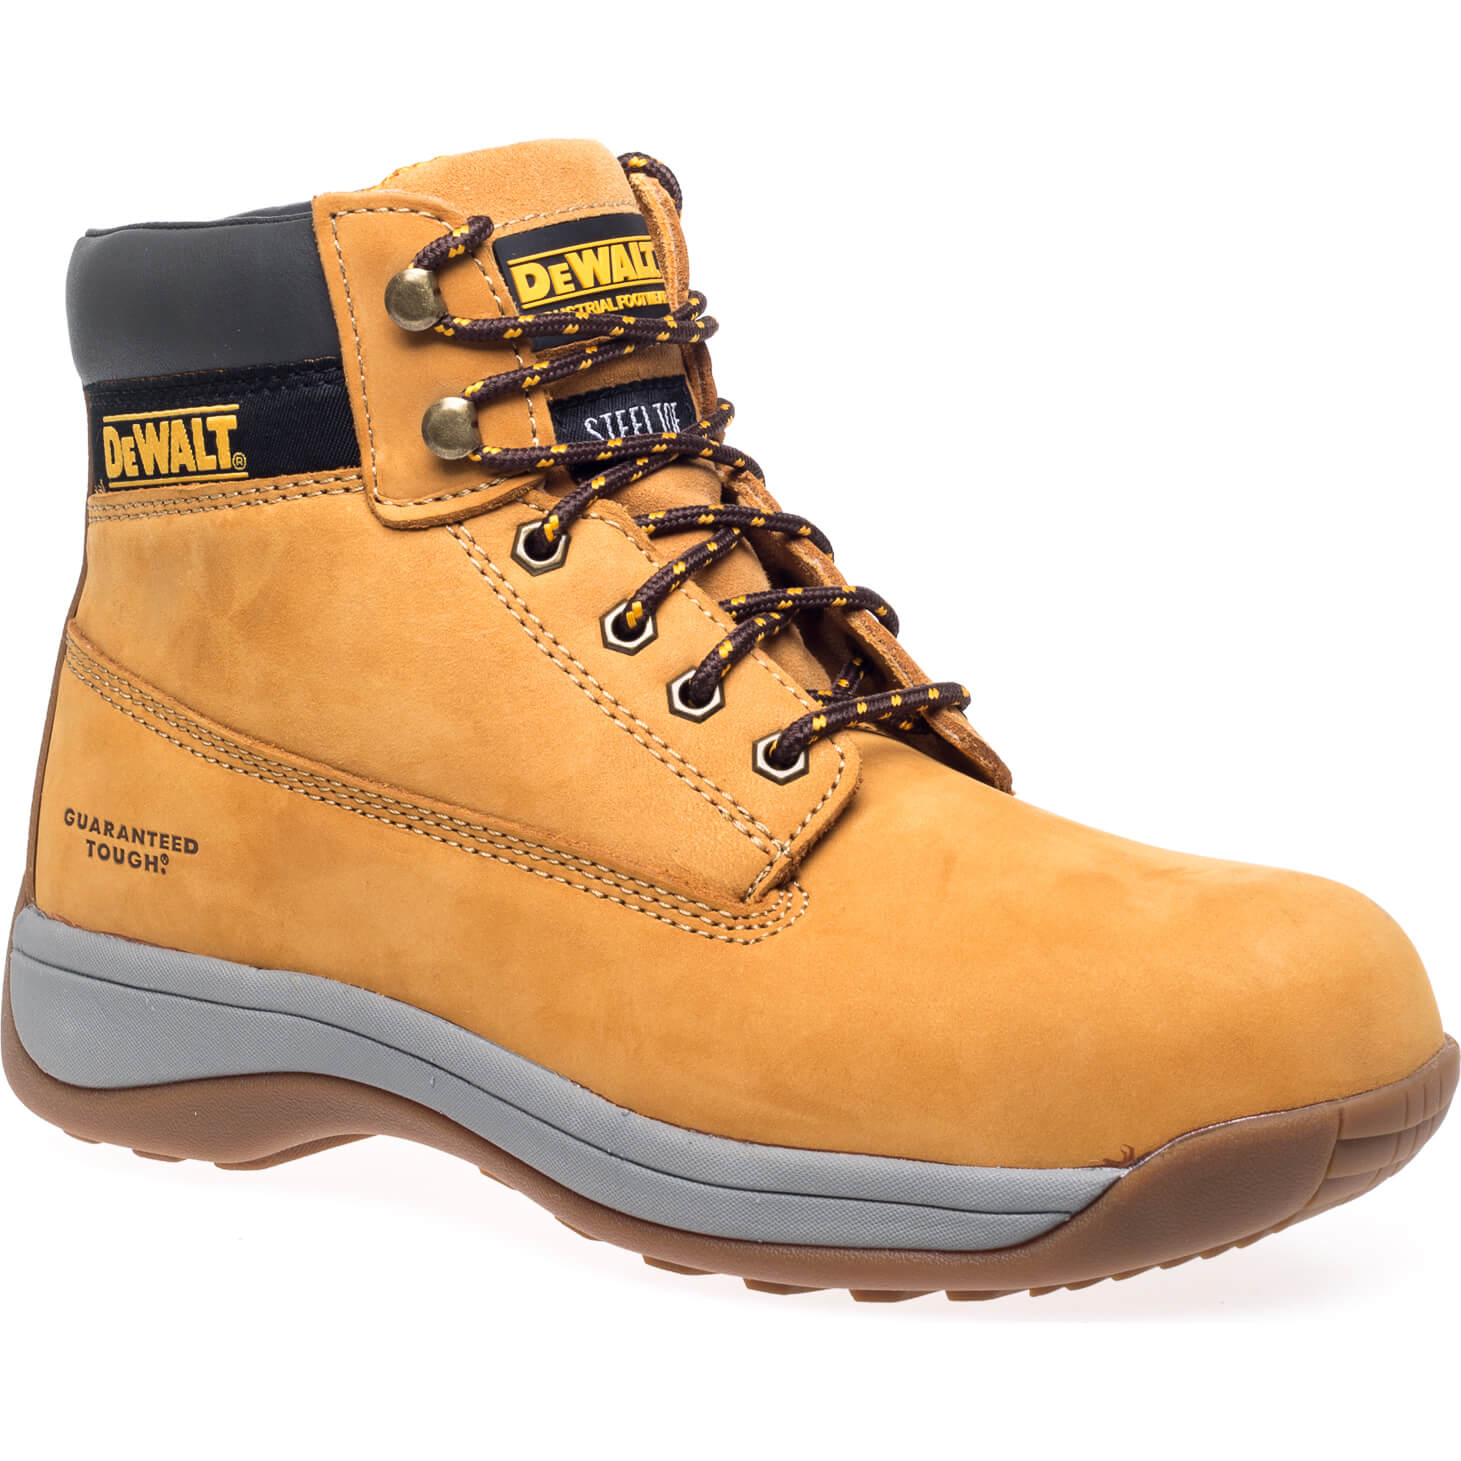 Photos - Safety Equipment DeWALT Apprentice Light Weight Flexi Hiker Boots Honey Size 10 50551600027 